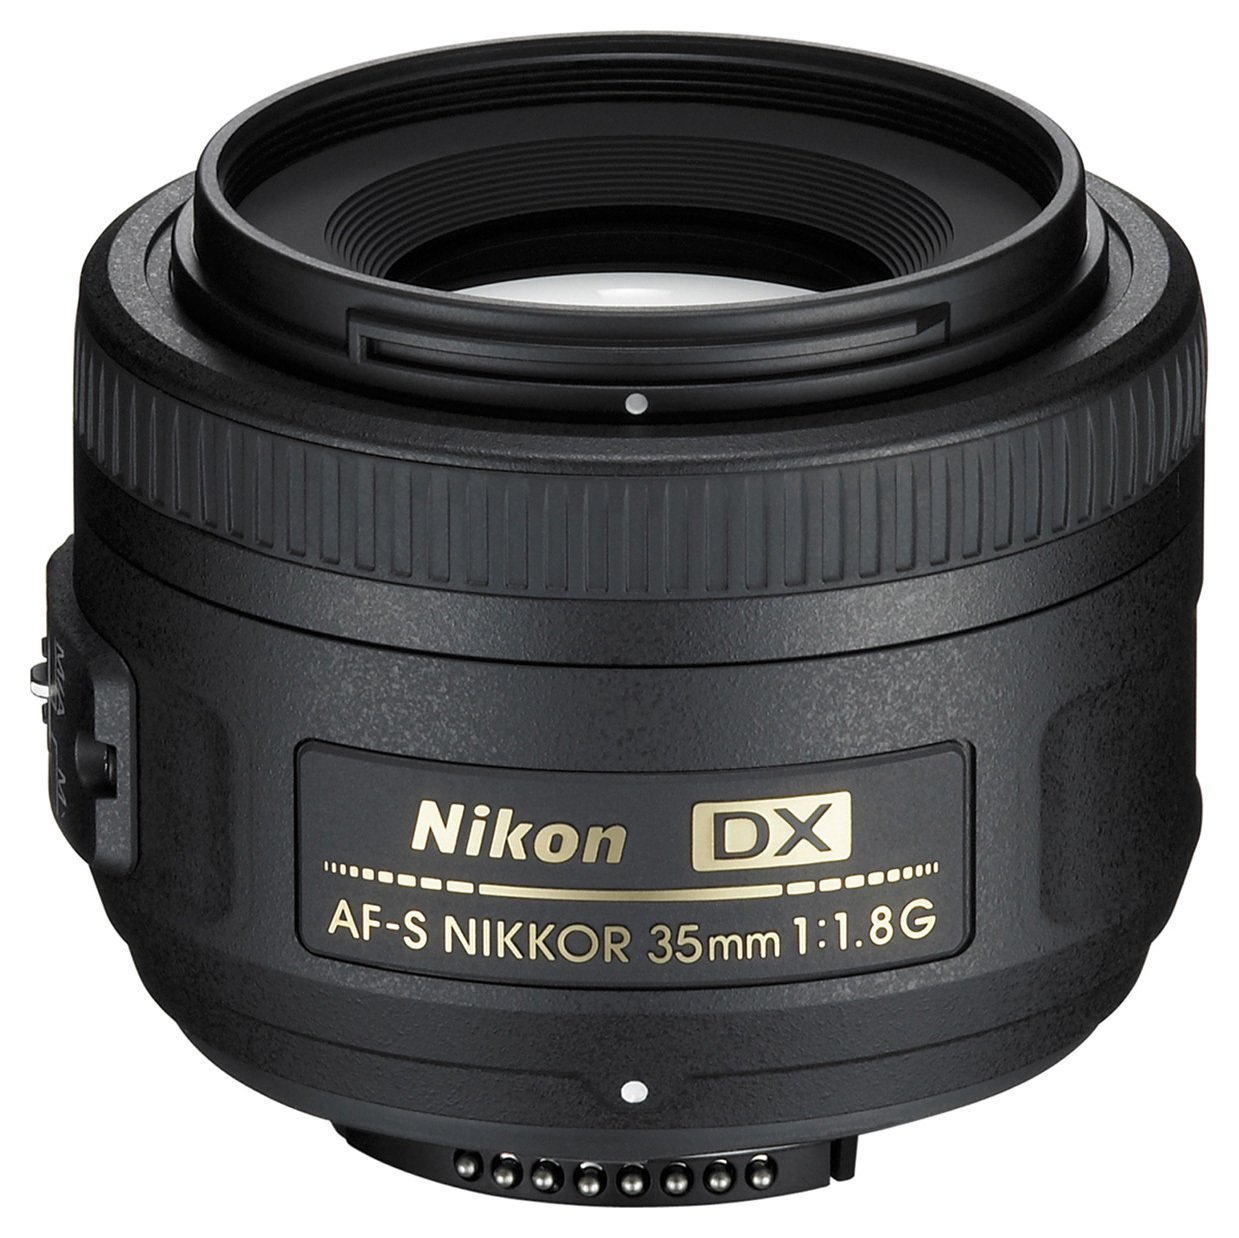 Nikon AF-S DX Nikkor 35mm f/1.8G Lens Review